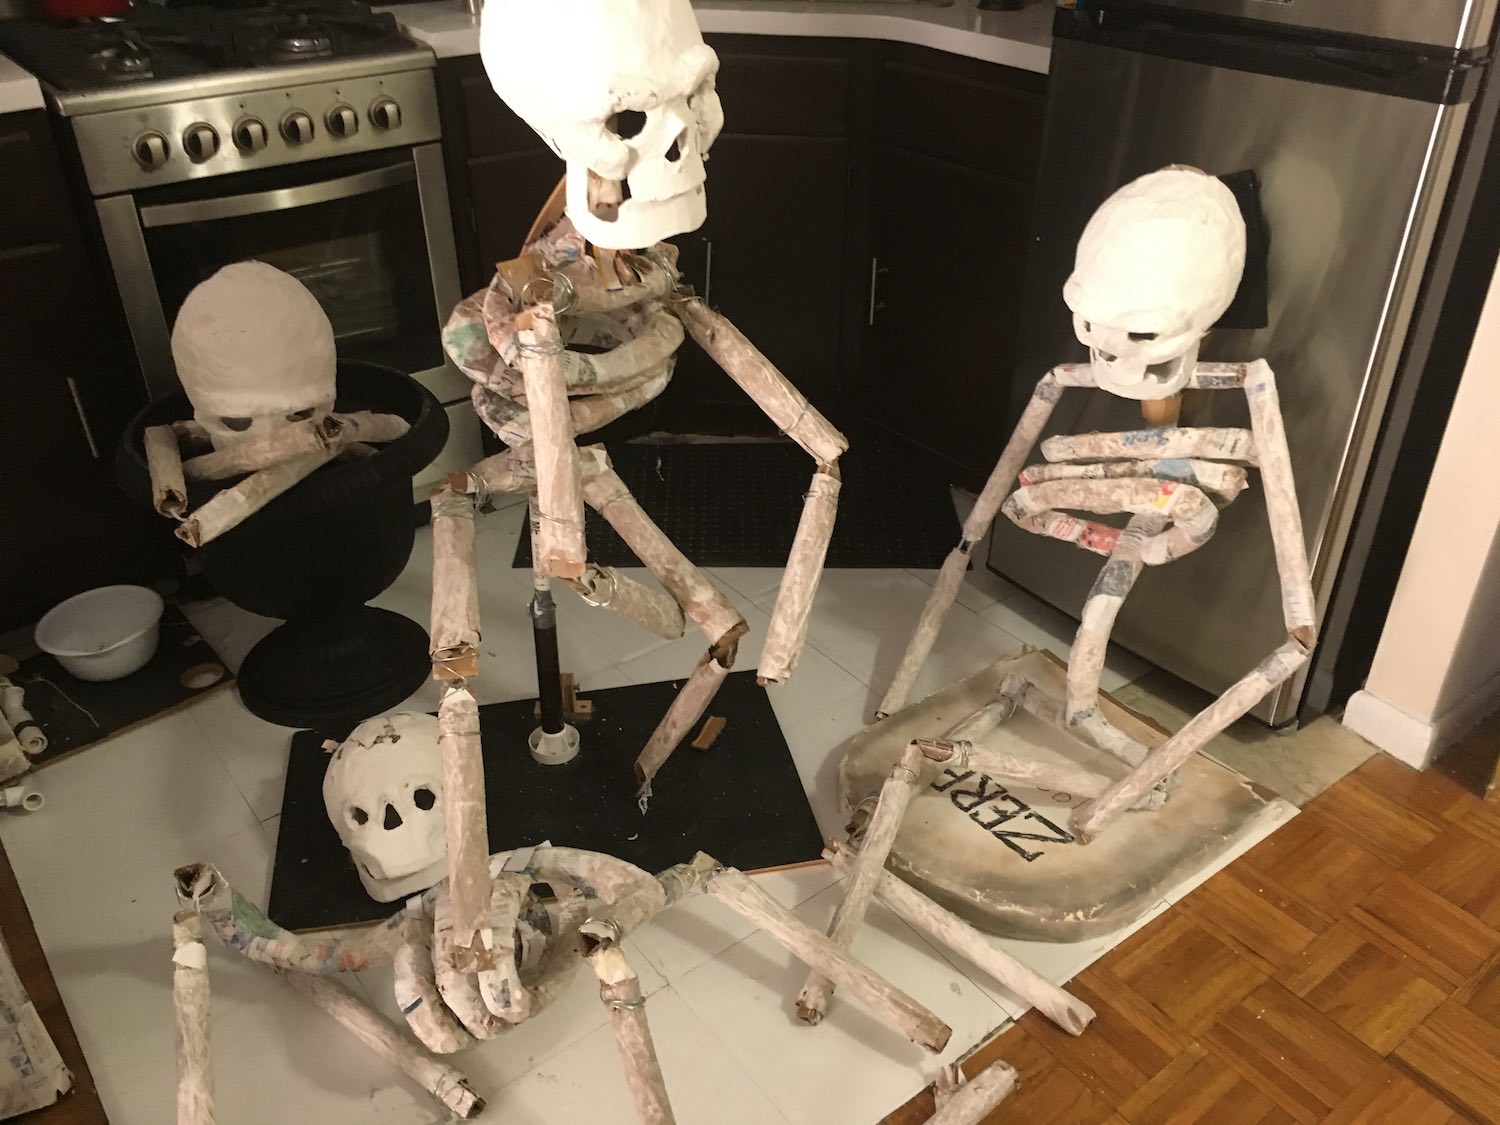 Four skeletons, in progress